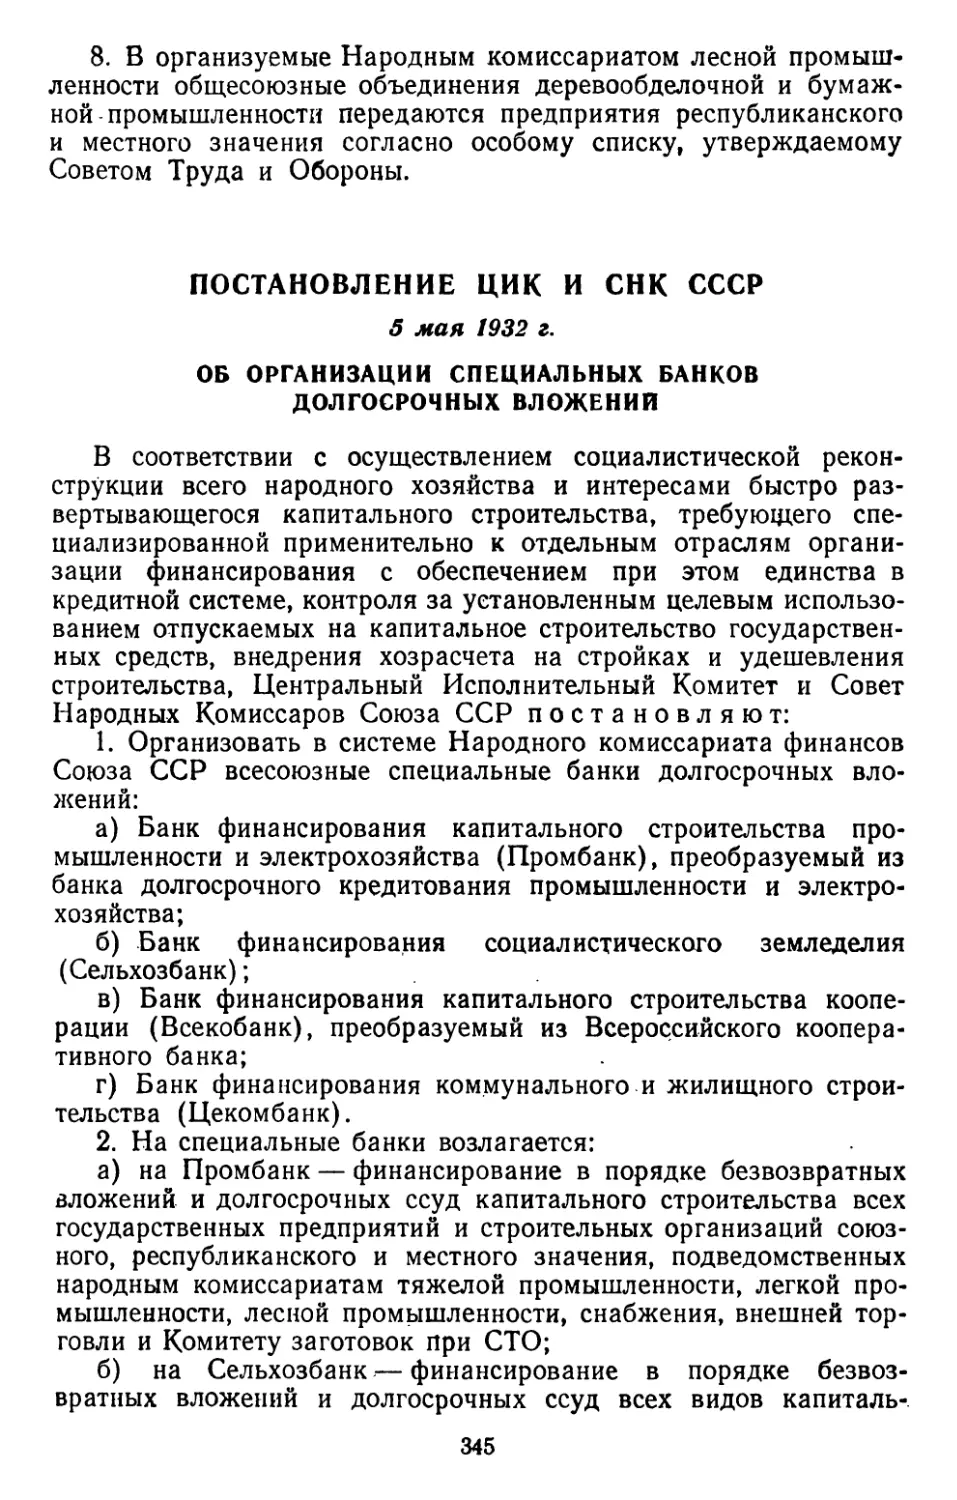 Постановление ЦИК и СНК СССР, 5 мая 1932 г. Об организации специальных банков долгосрочных вложений